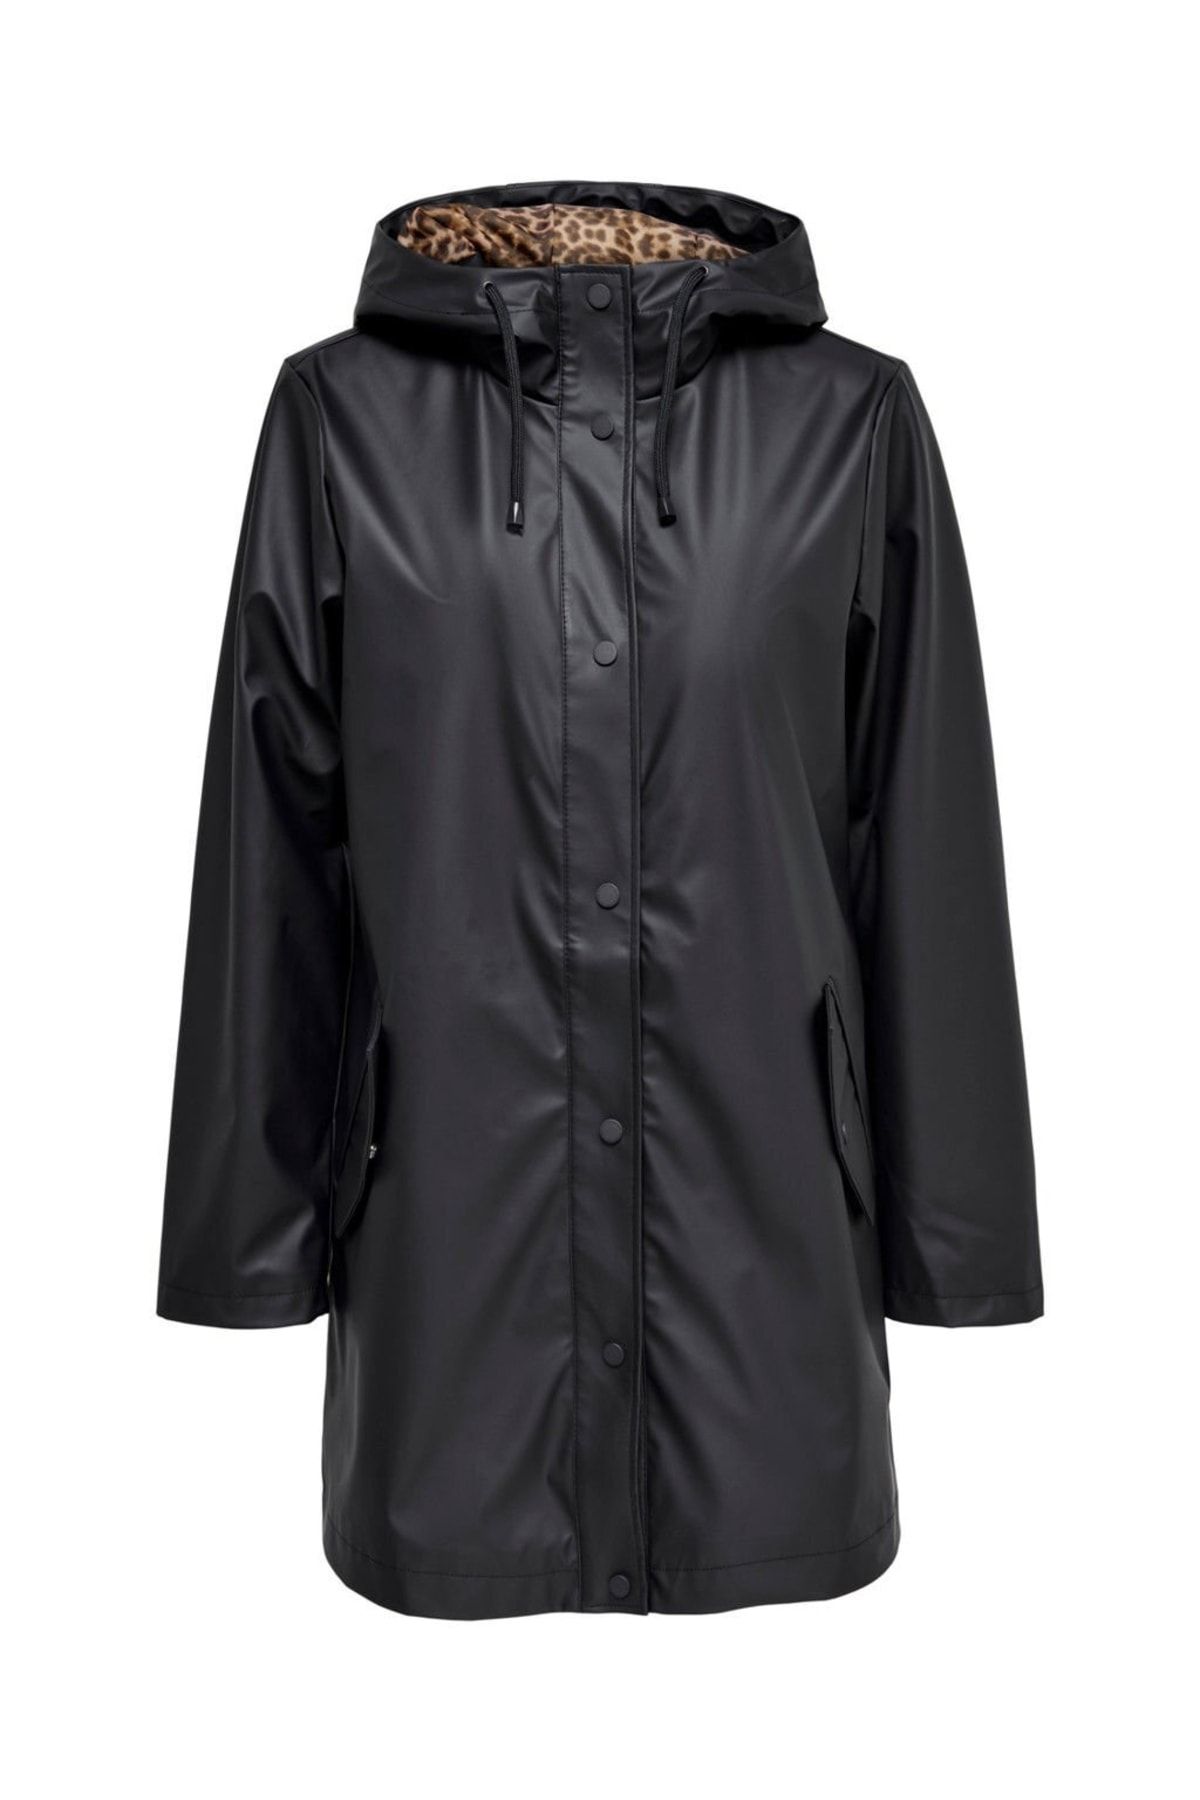 Only Kadın Leo Kapüşonlu Yağmurluk Ceket-siyah 15264846